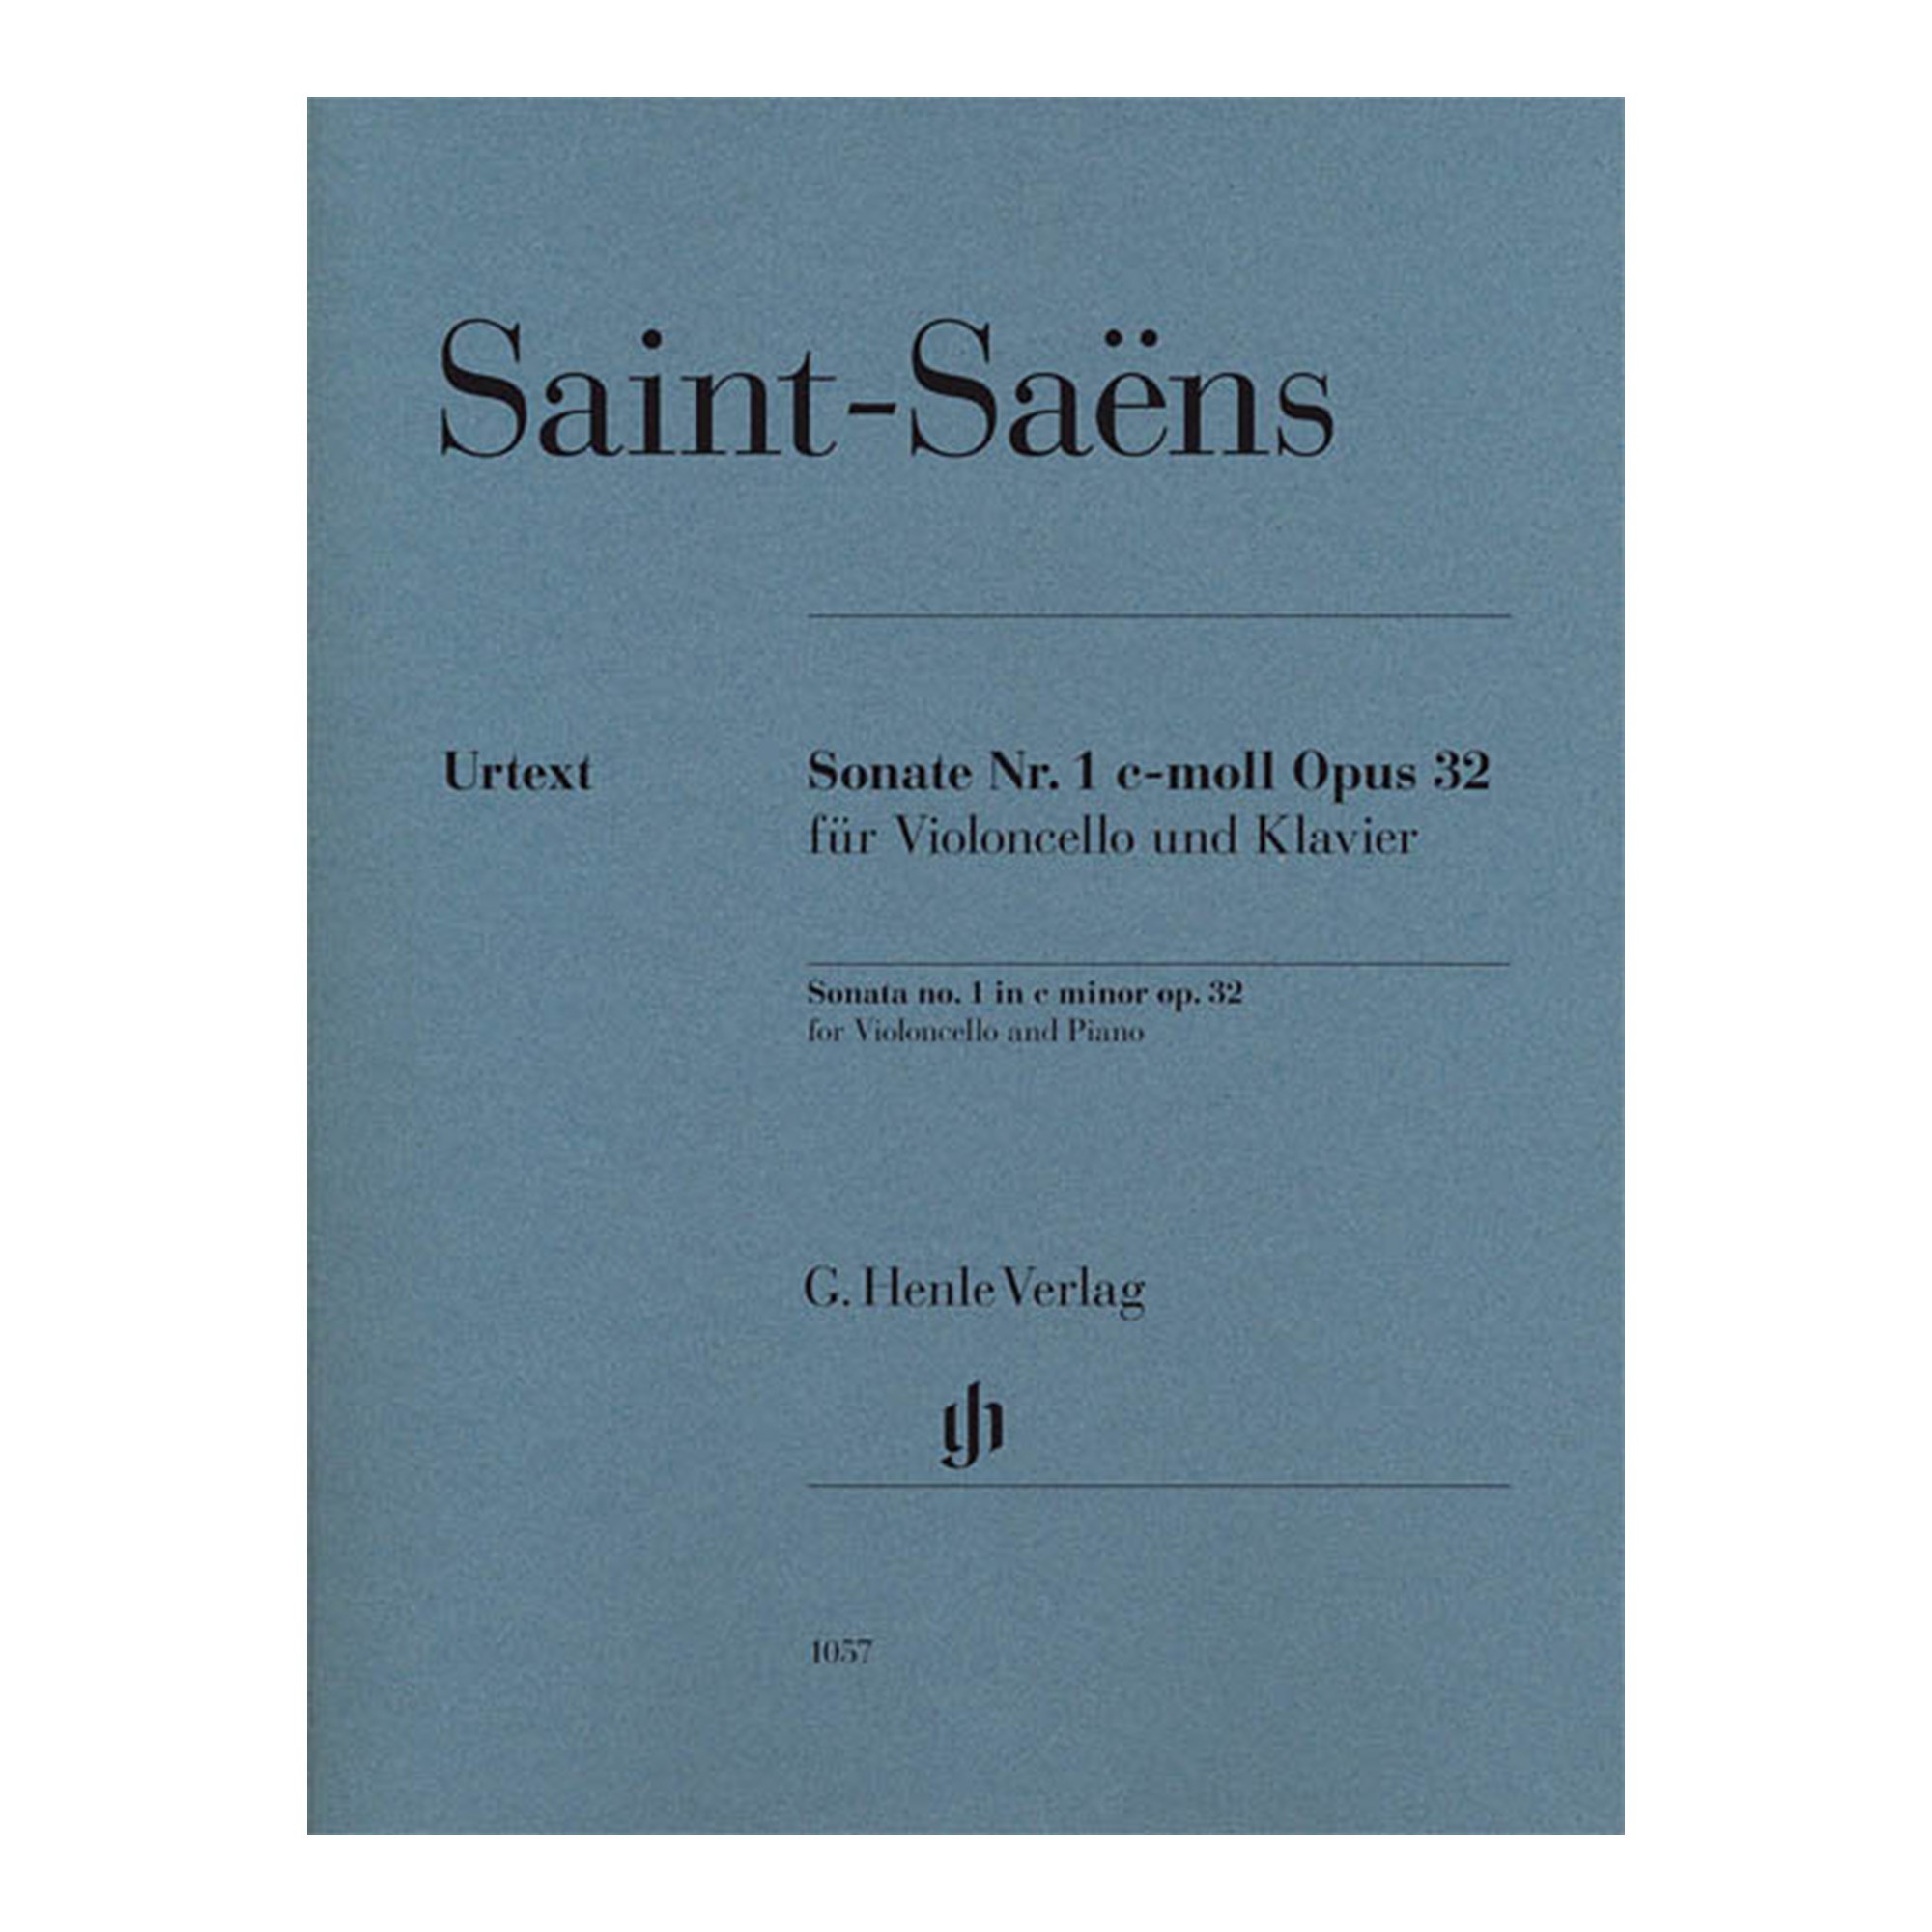 Sonata No. 1 in C Minor, Op. 32 for Cello and Piano